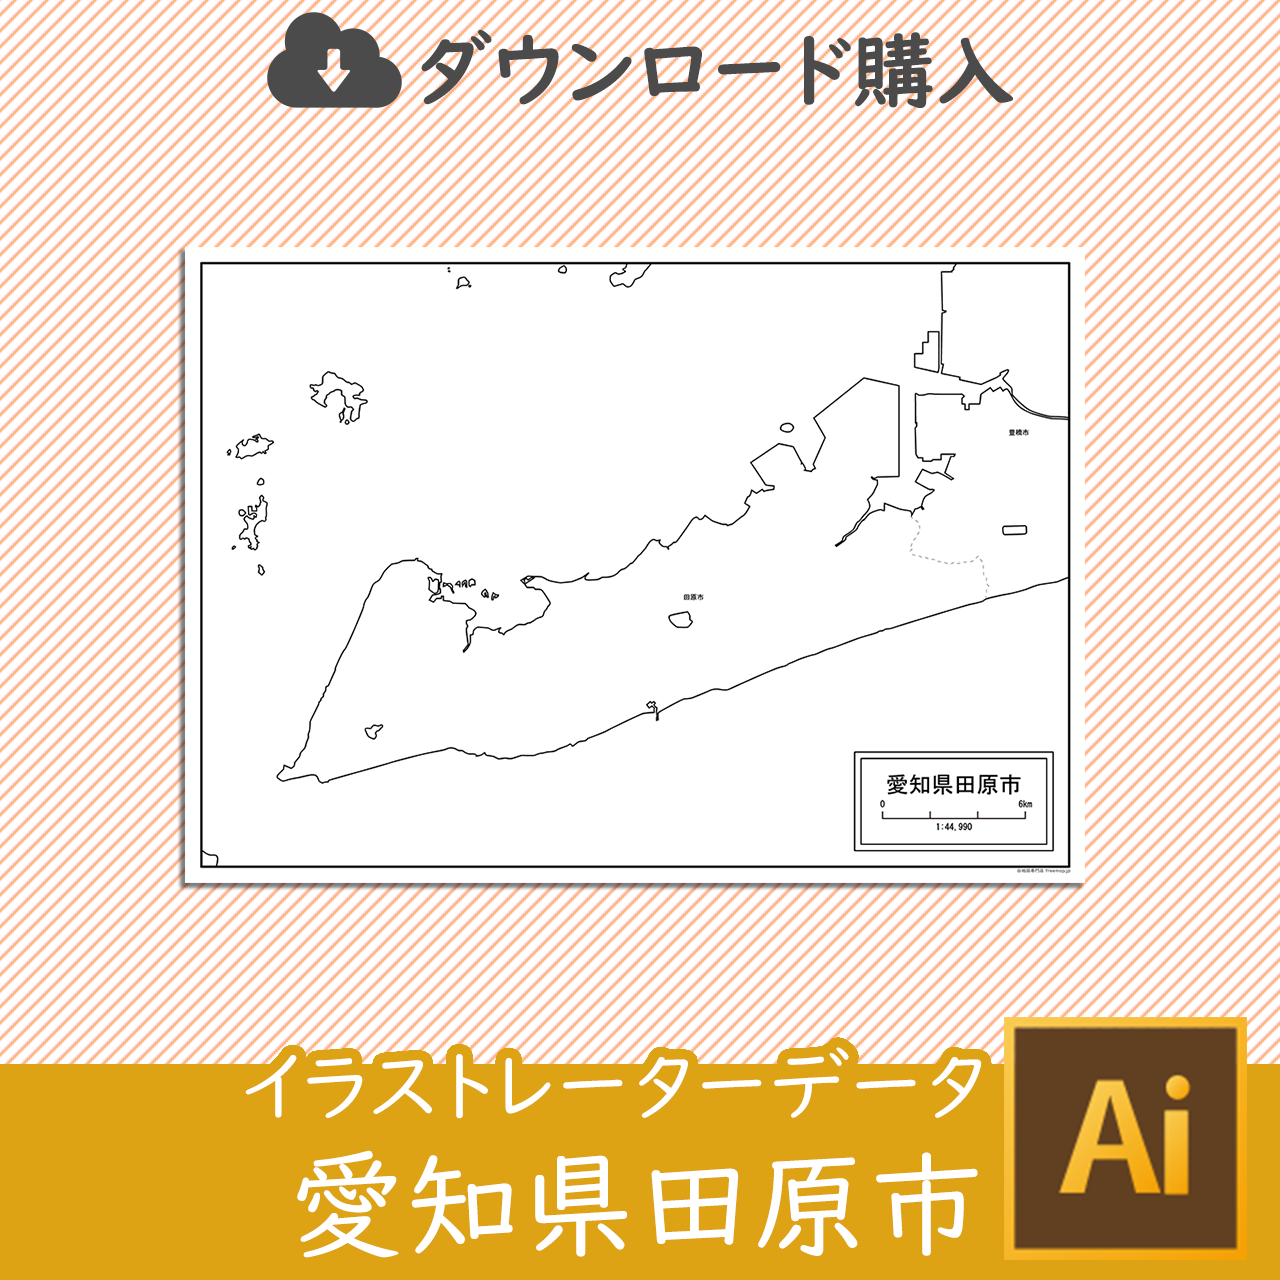 田原市のaiデータのサムネイル画像